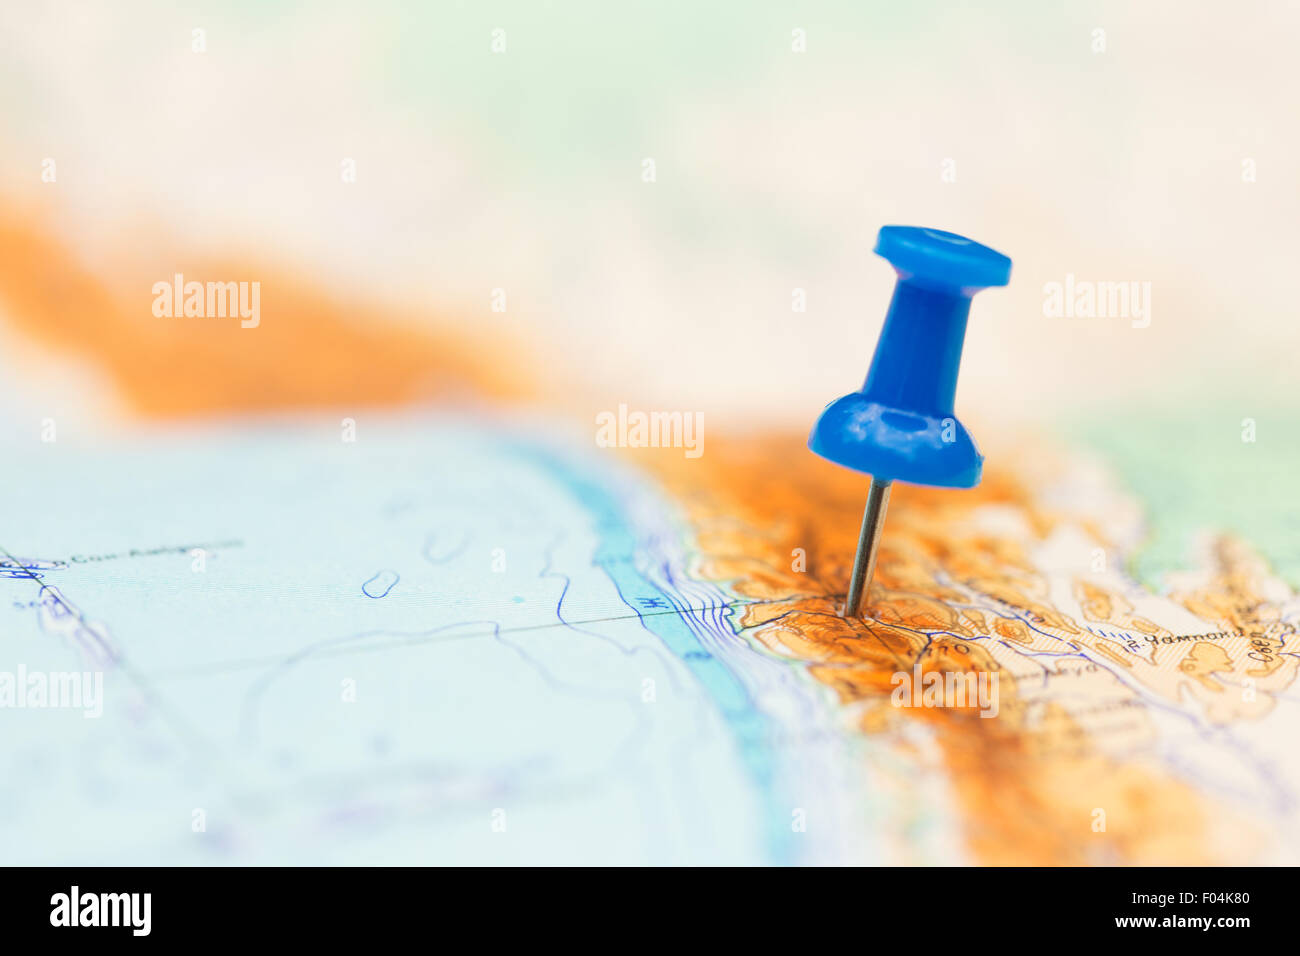 Reisen Sie Reiseziel, blaue Pin auf der Karte Stockfoto